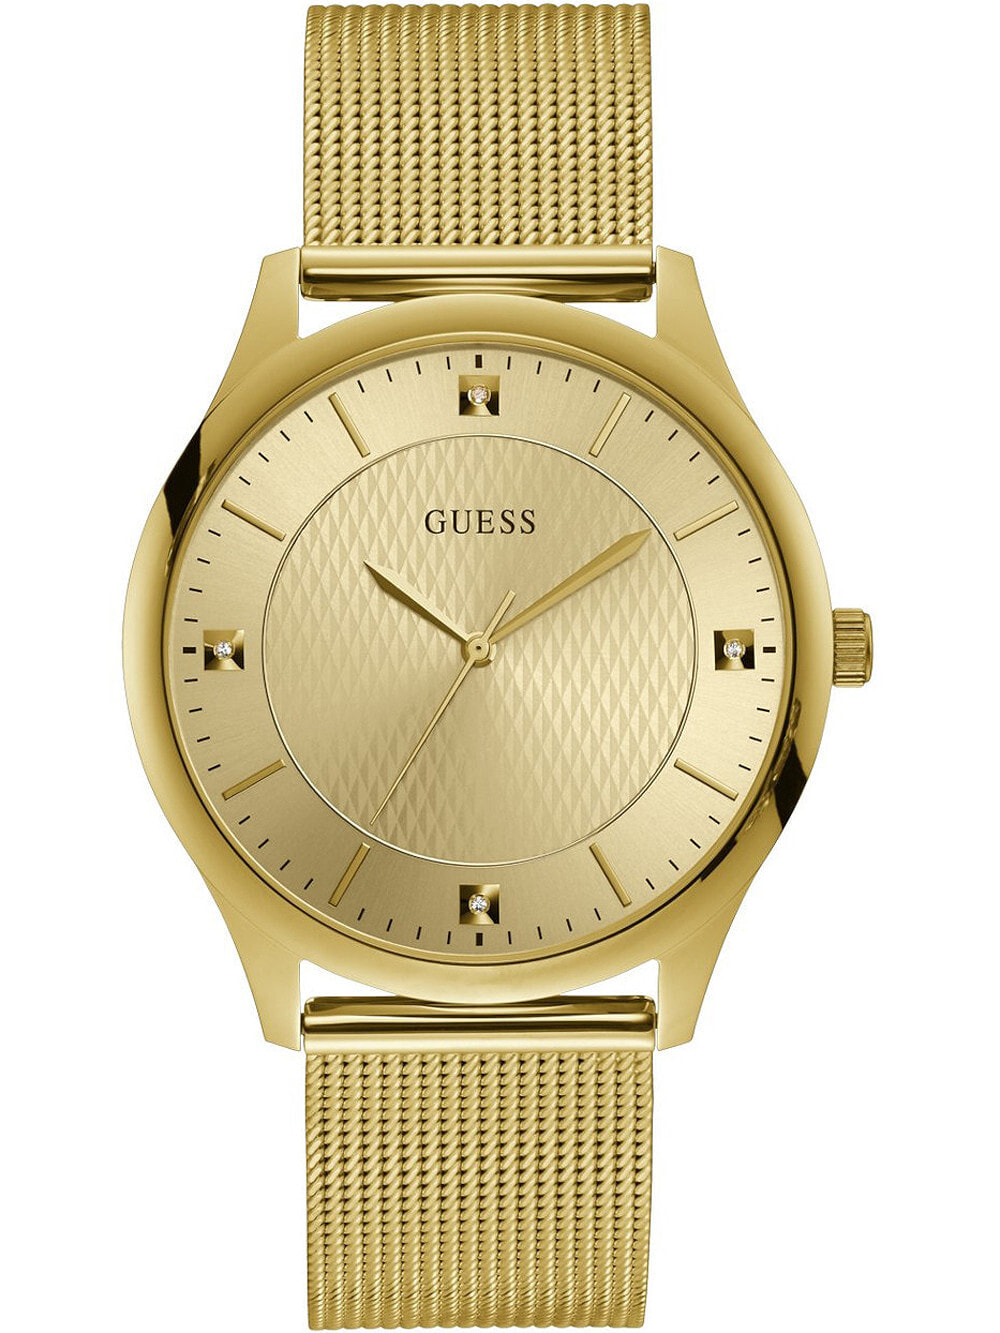 Мужские наручные часы с золотым браслетом Guess GW0069G2 Riley mens 44mm 3ATM